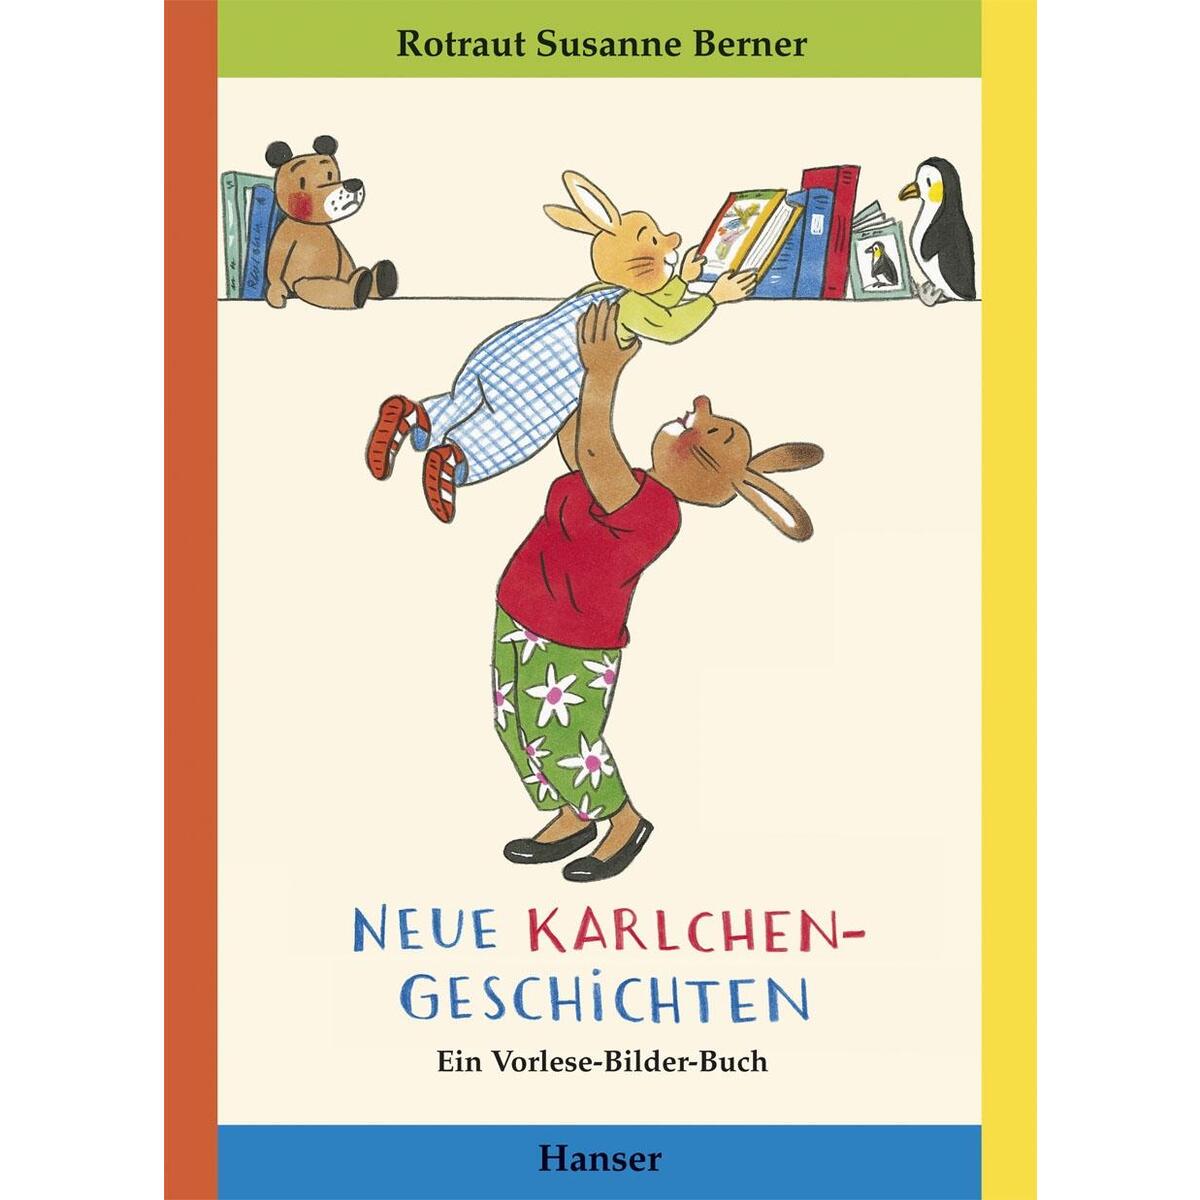 Neue Karlchen-Geschichten von Carl Hanser Verlag